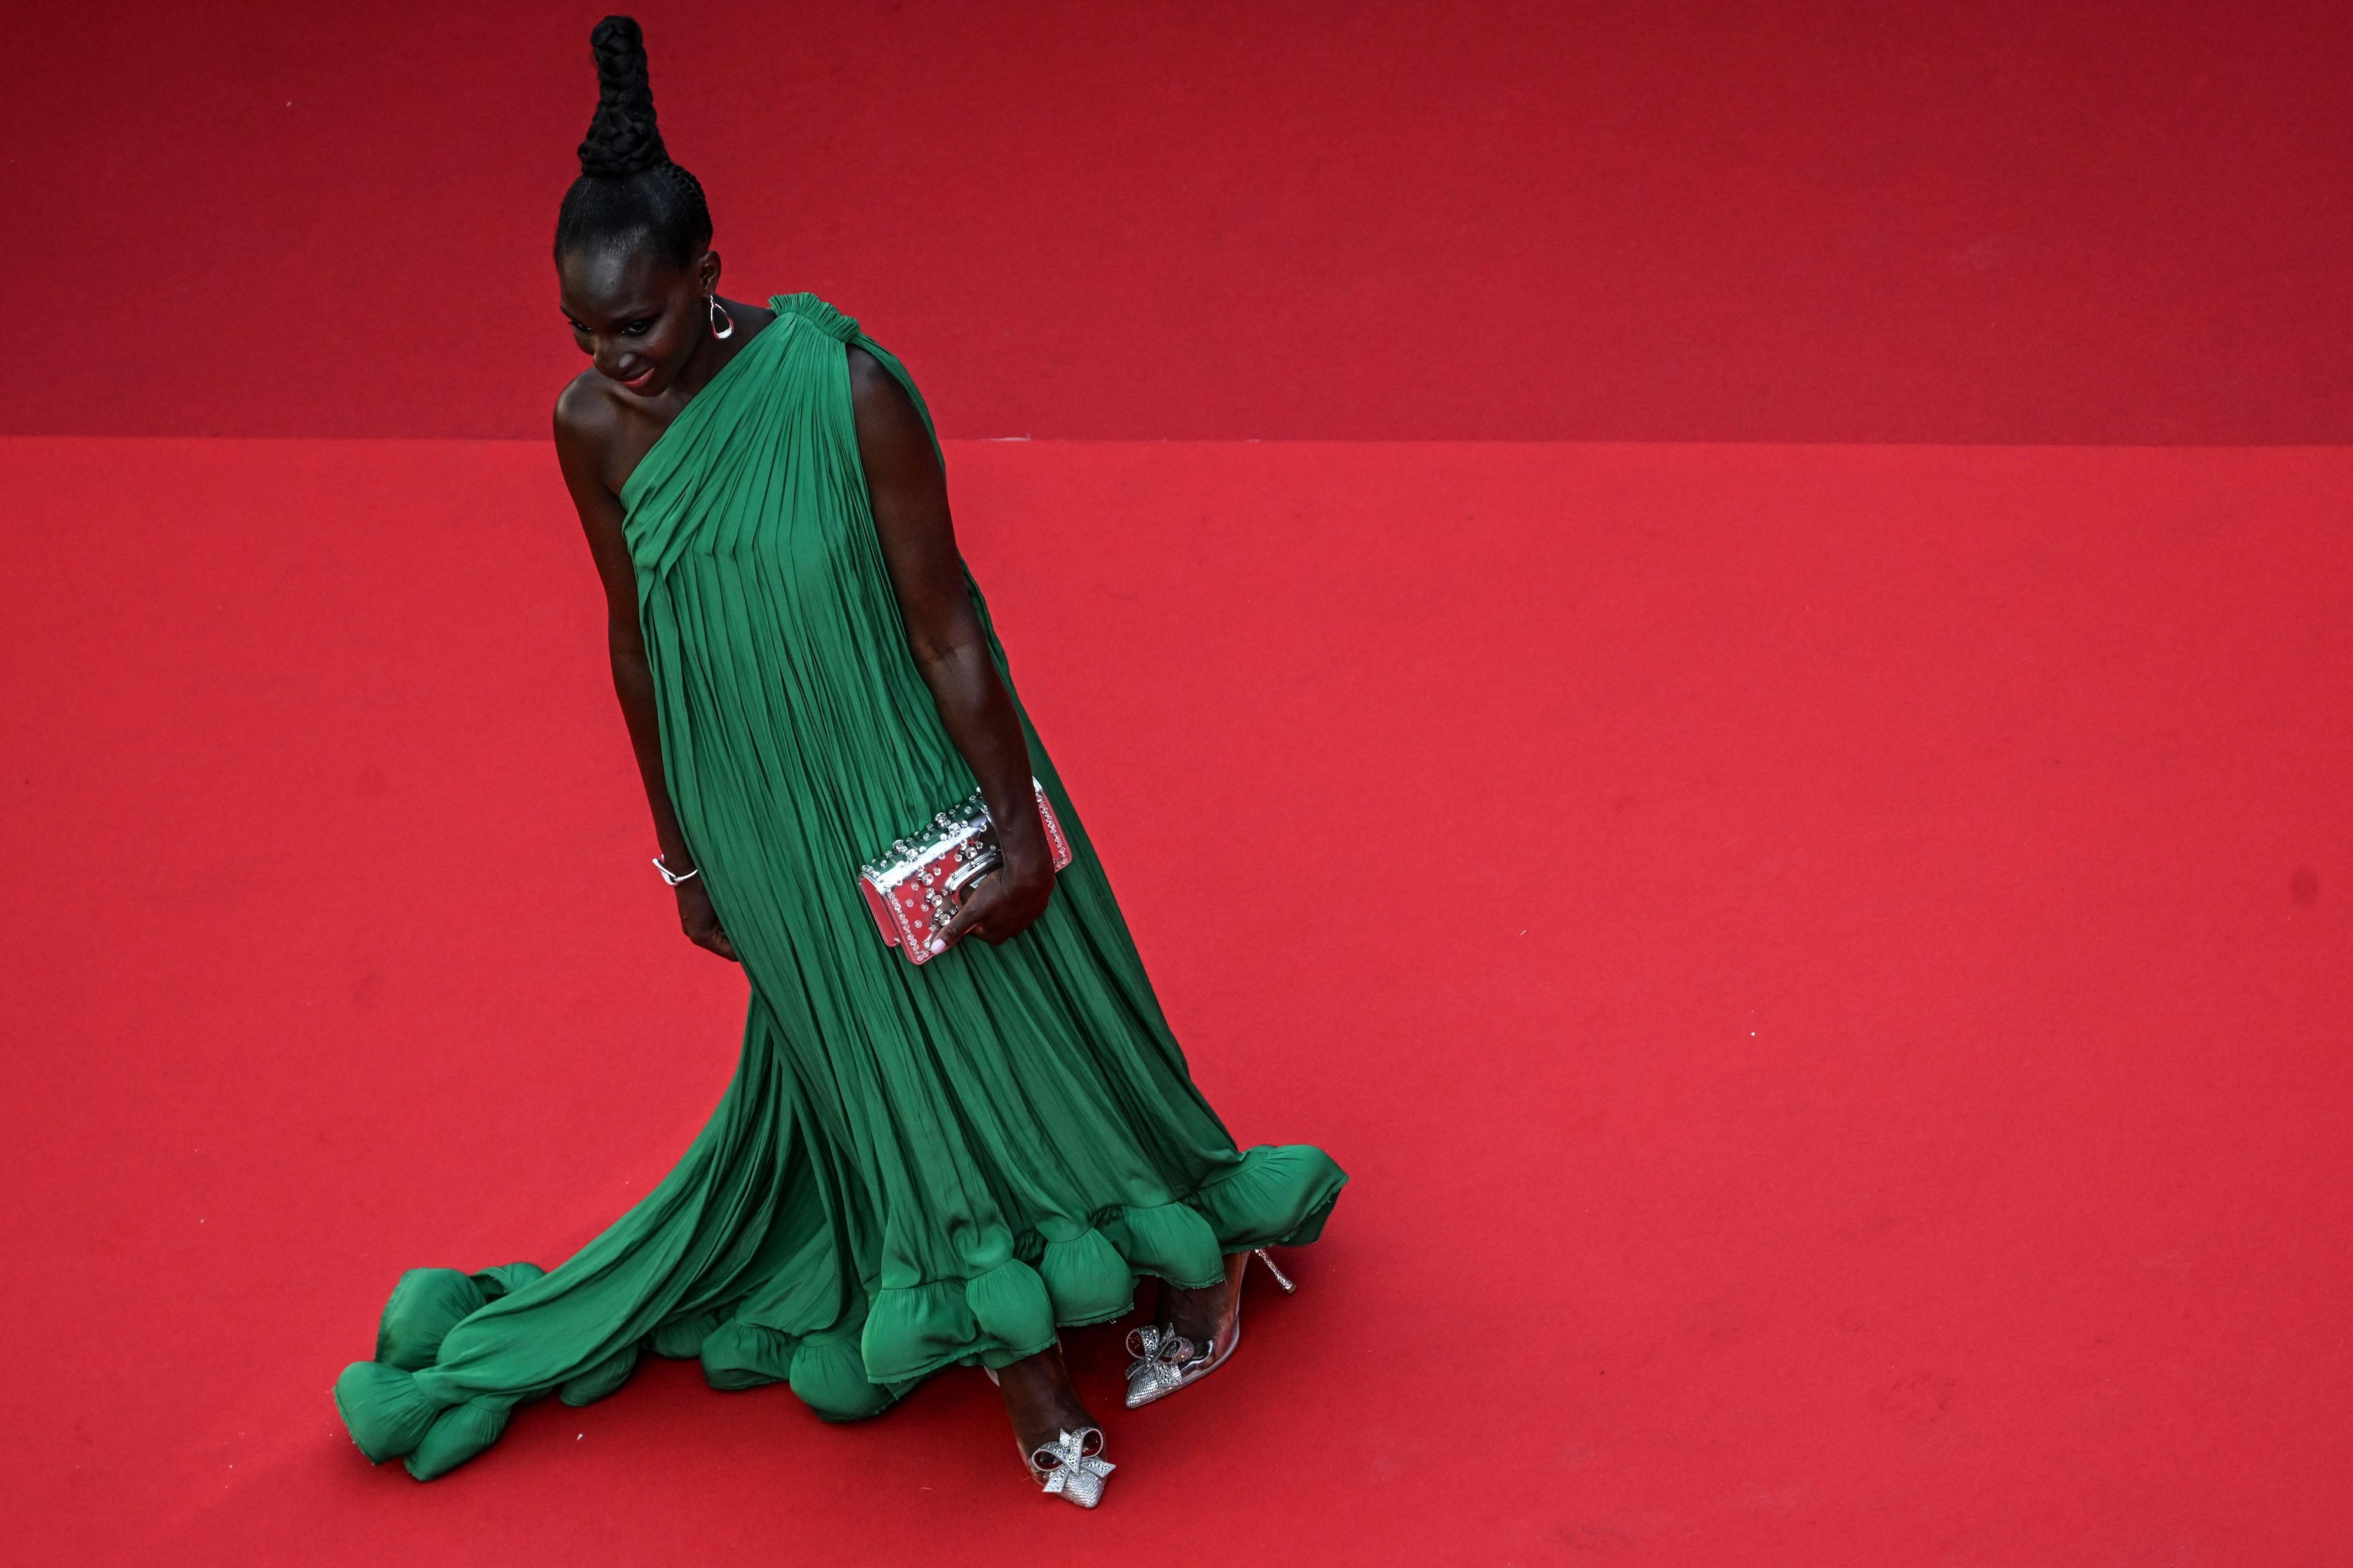 BLIKKFANG: Det var mange spennende detaljer ved antrekket til den franske skuespilleren Eye Haidara. Den grønne kjolen med voluminøse volanger fløt elegant bortover den røde løperen. Håret var satt opp stramt og fremhevet kjolens ene skulder.